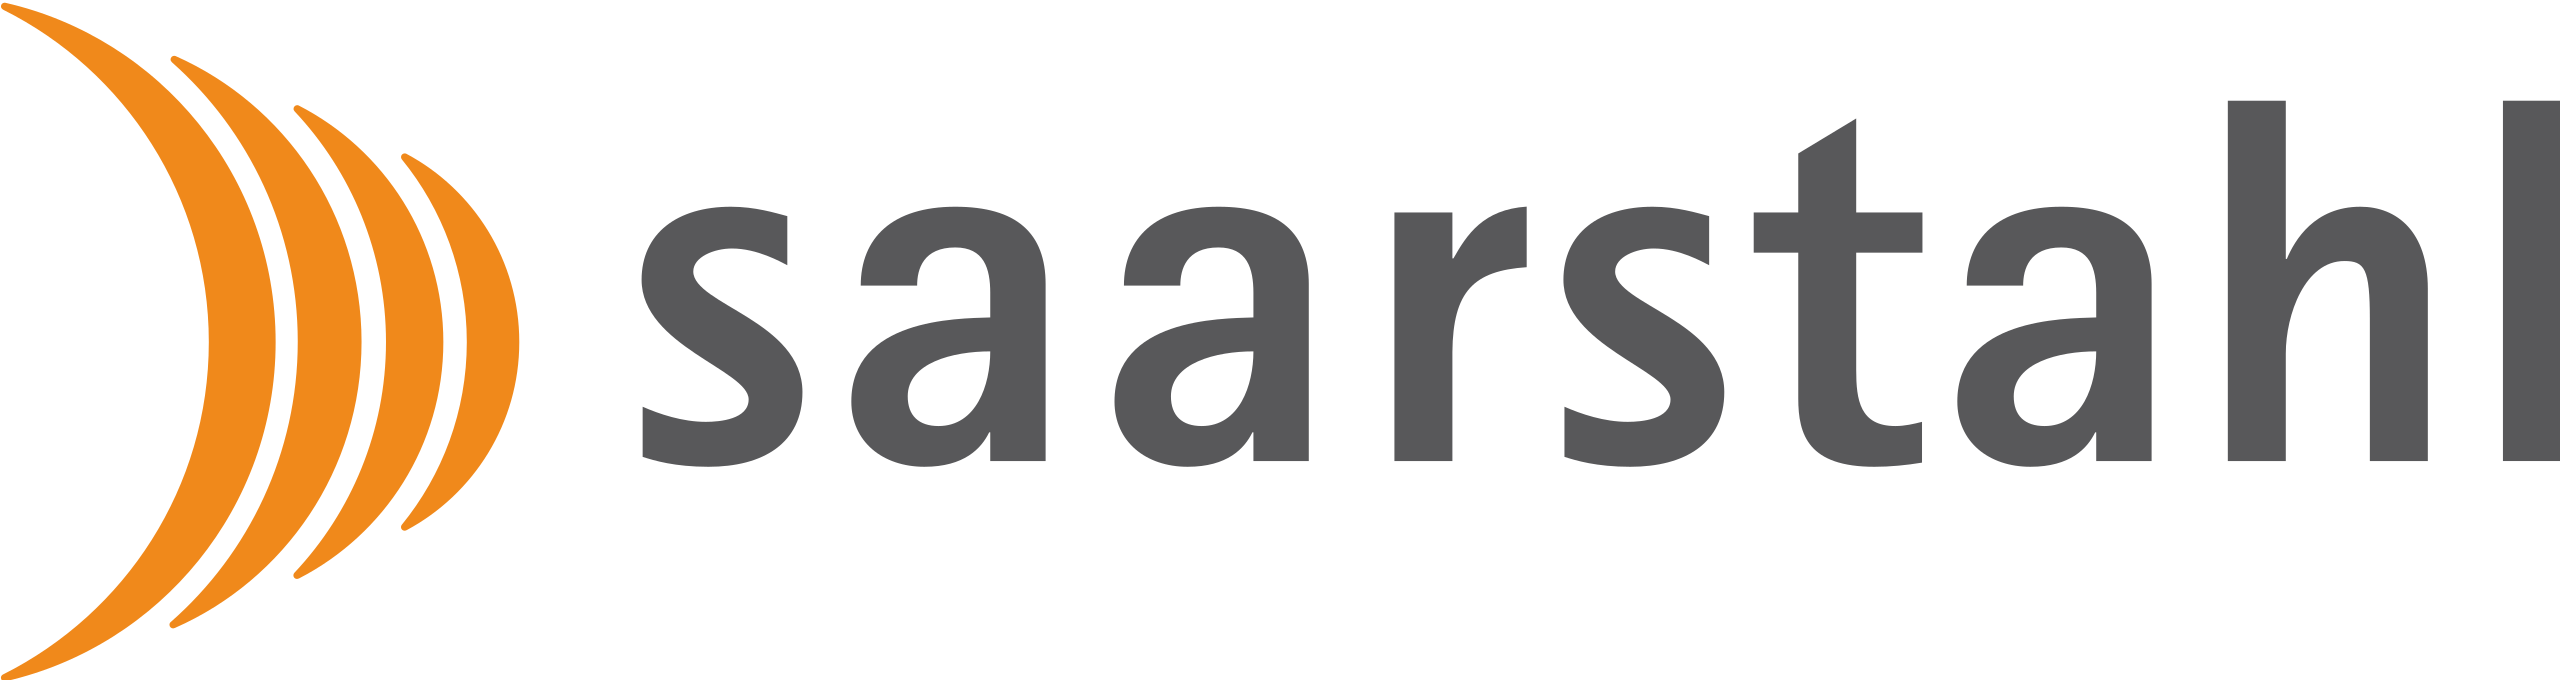 Saarstahl - client ORBIS 